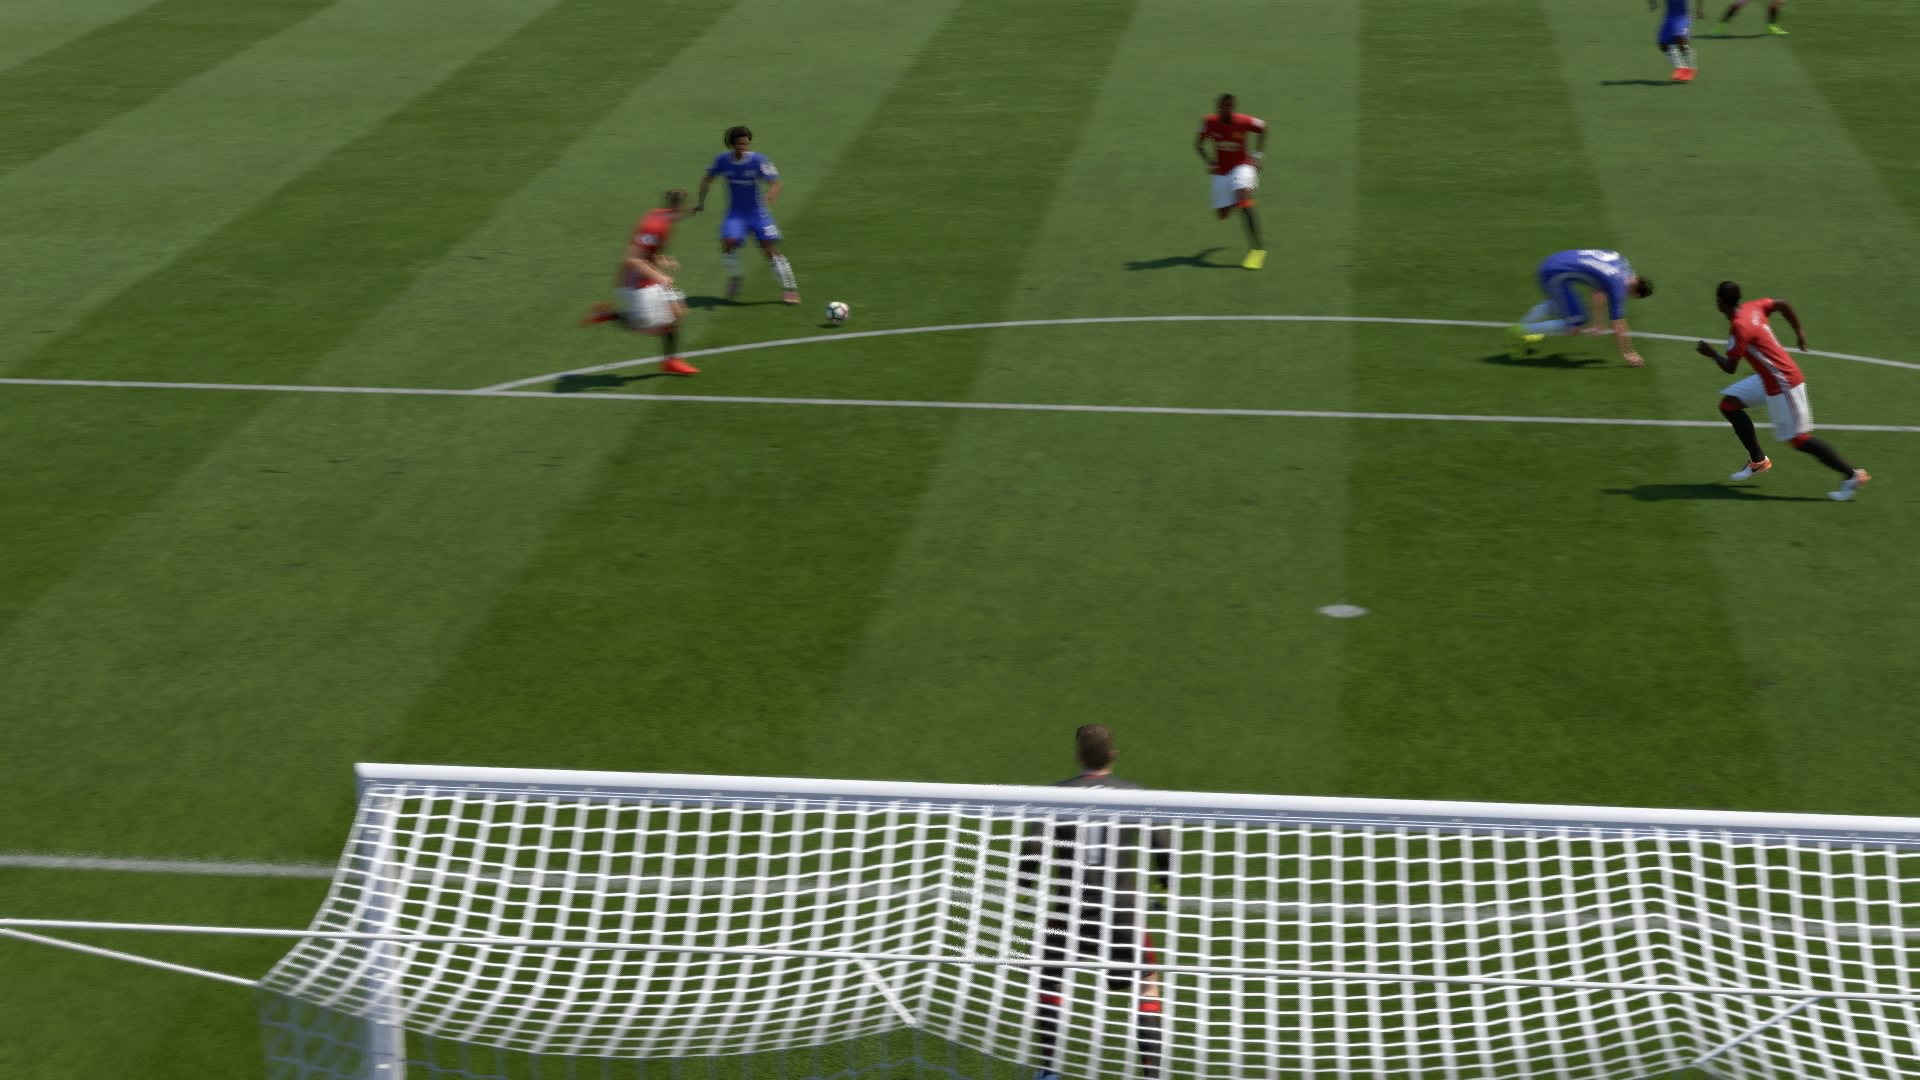 FIFA 17 Intros 0-1 CHE V MUN, 2nd Half